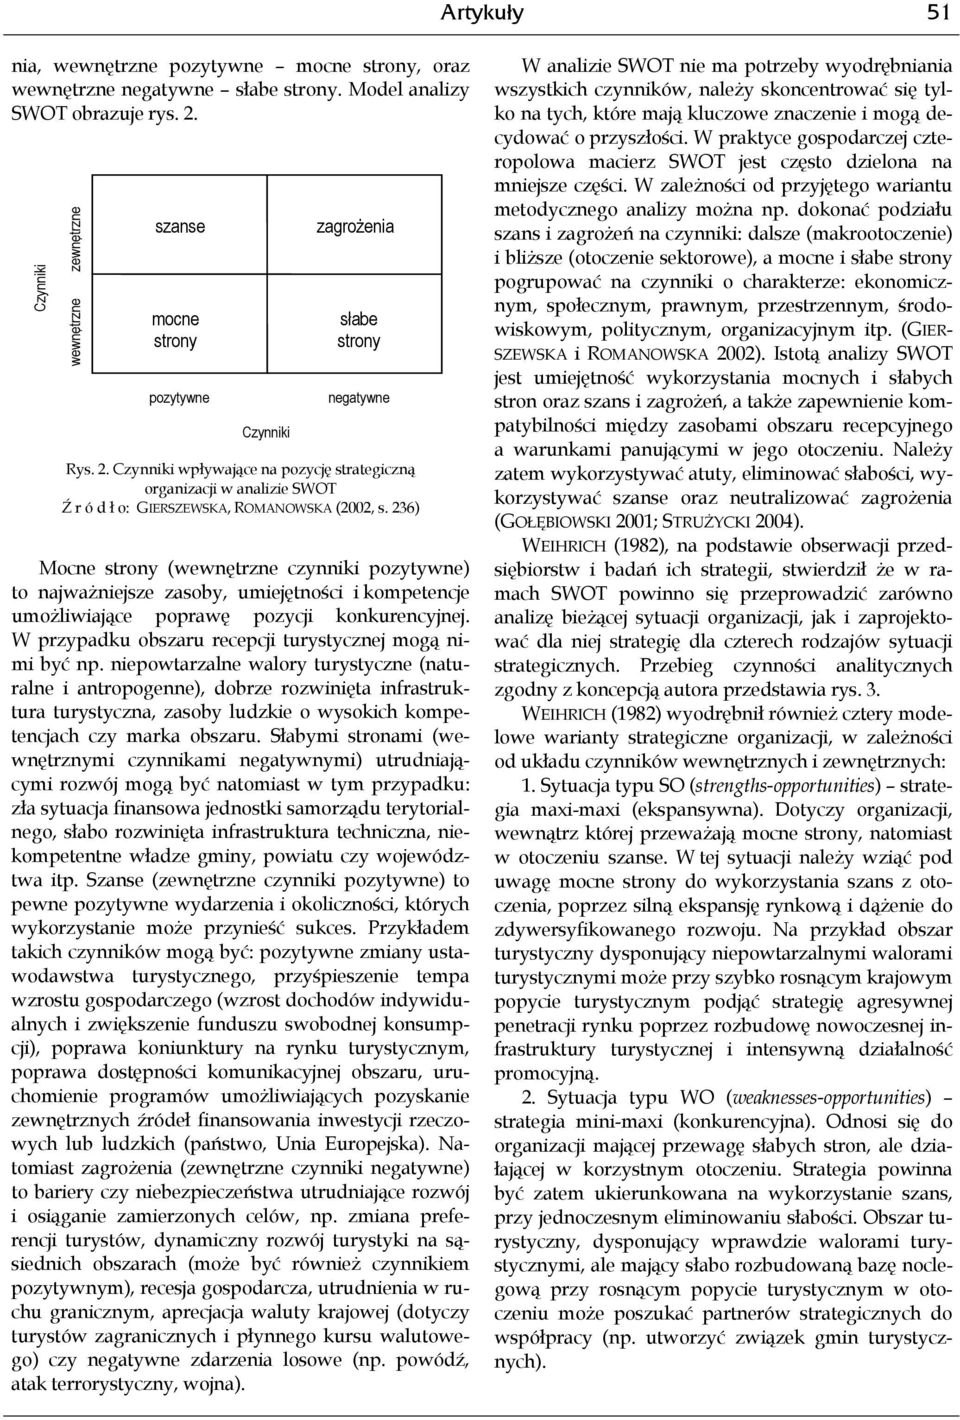 Czynniki wpływające na pozycję strategiczną organizacji w analizie SWOT Ź r ó d ł o: GIERSZEWSKA, ROMANOWSKA (2002, s.